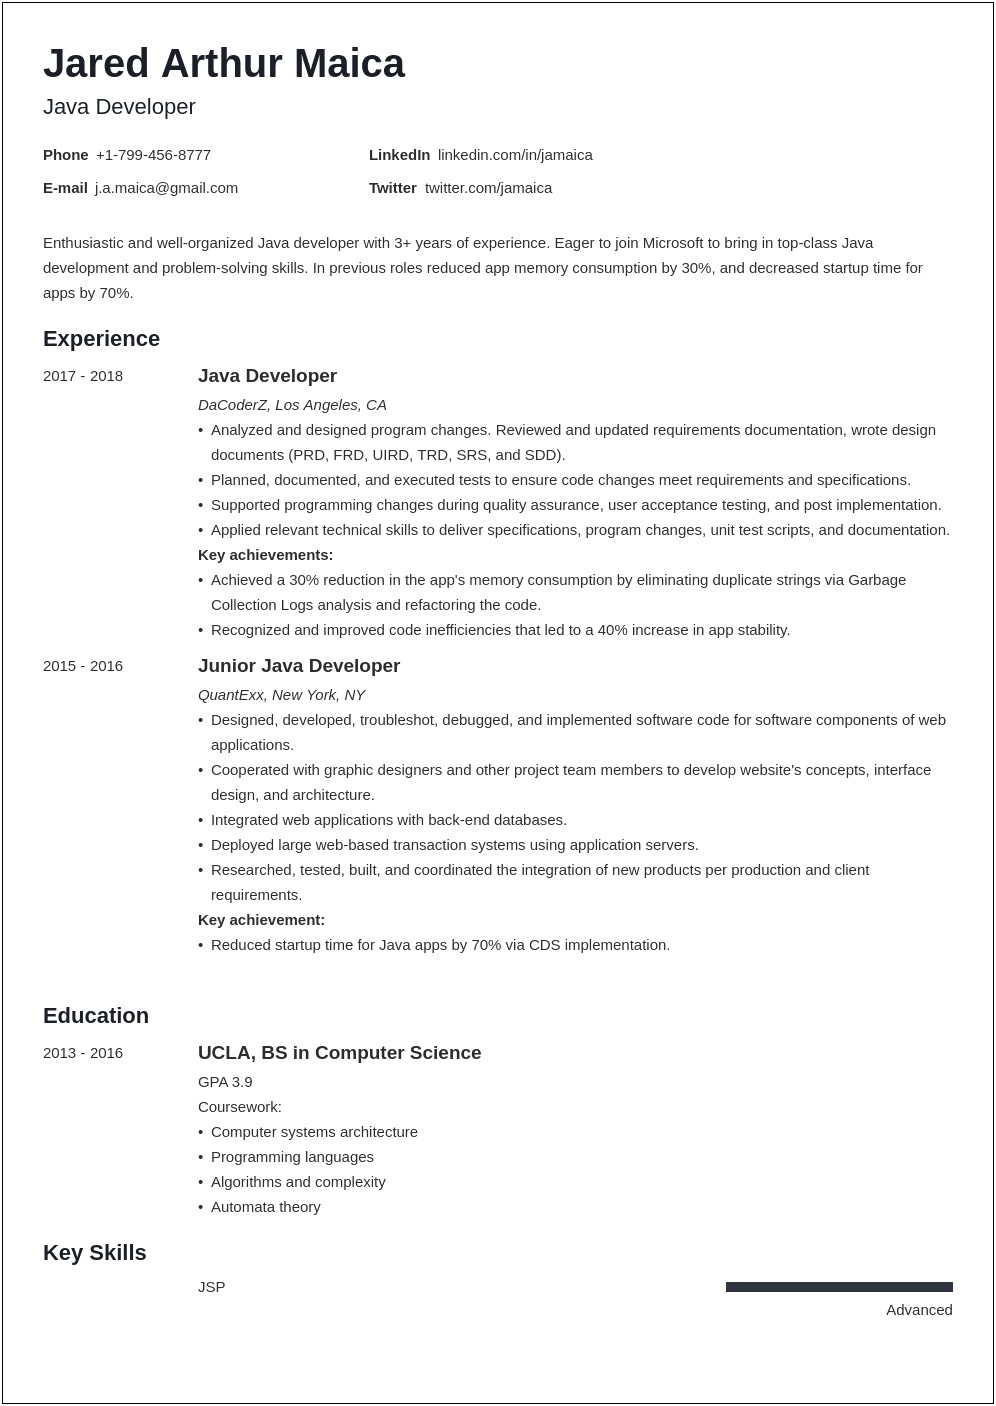 Best Entry Level Resume For Java Developer